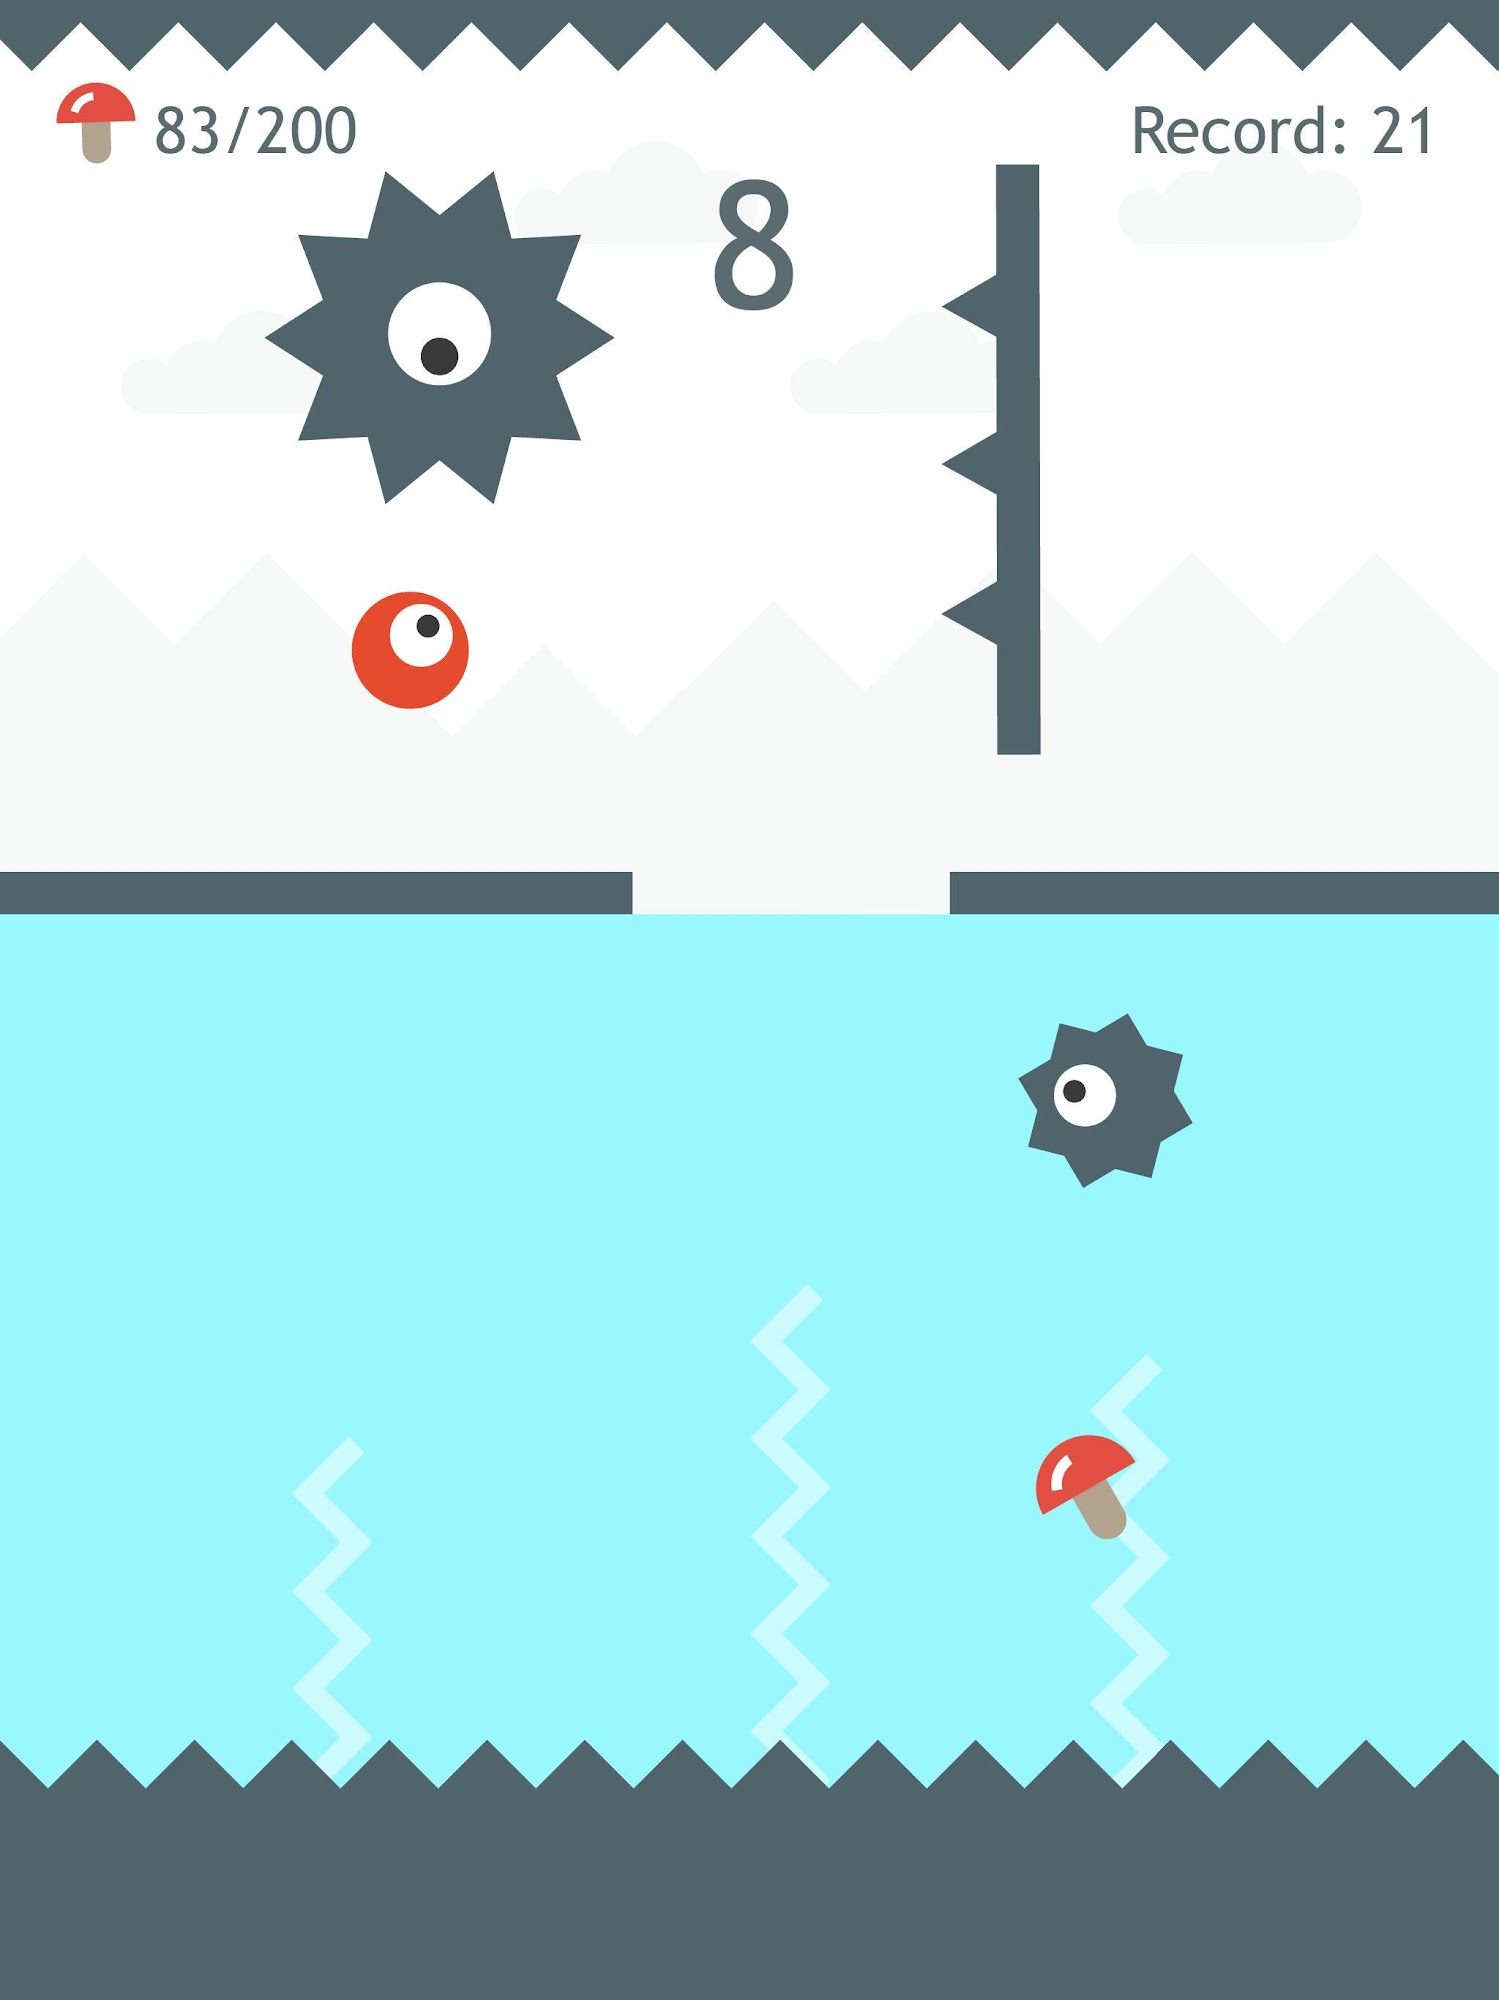 Hop Hop Hop Underwater - Android game screenshots.